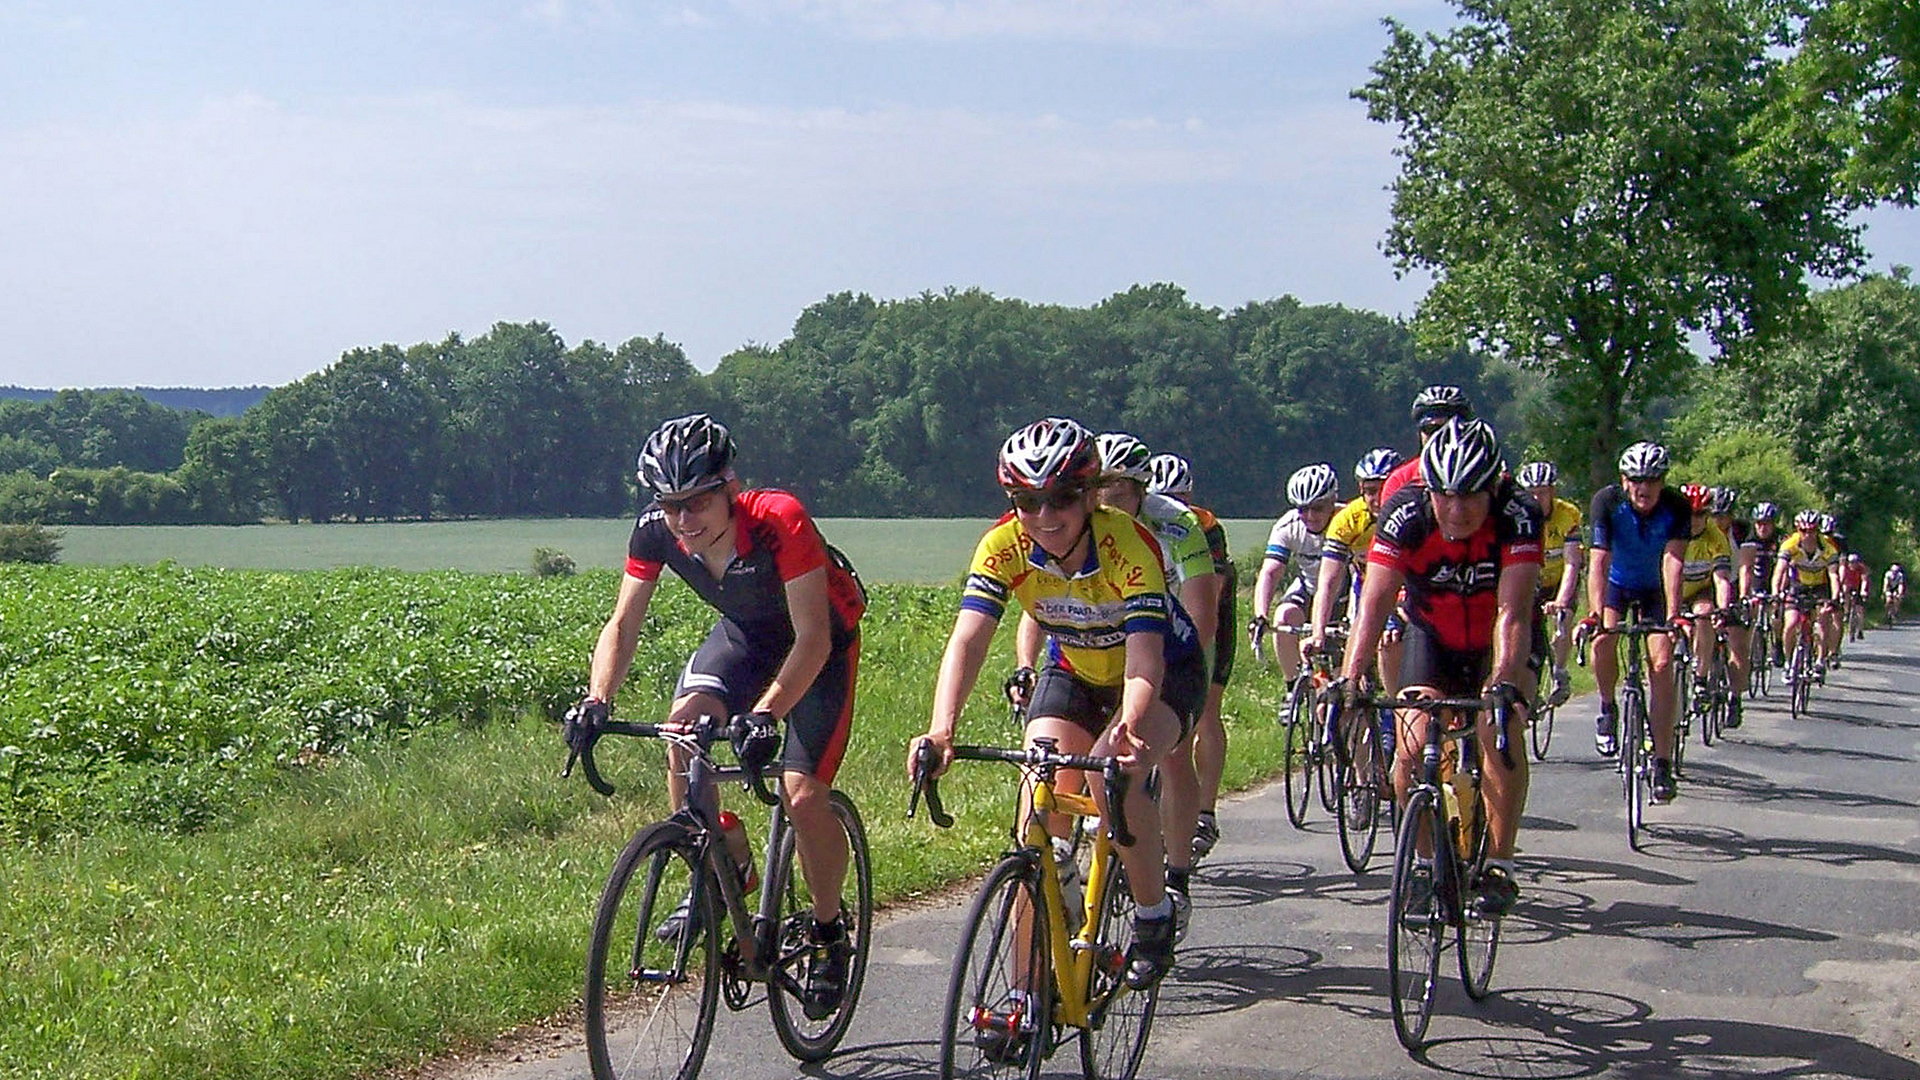 Rennradfahrer im Sommer neben einem Feld auf gemeinsamer Tour über einen Wirtschaftsweg in der Lüneburger Heide